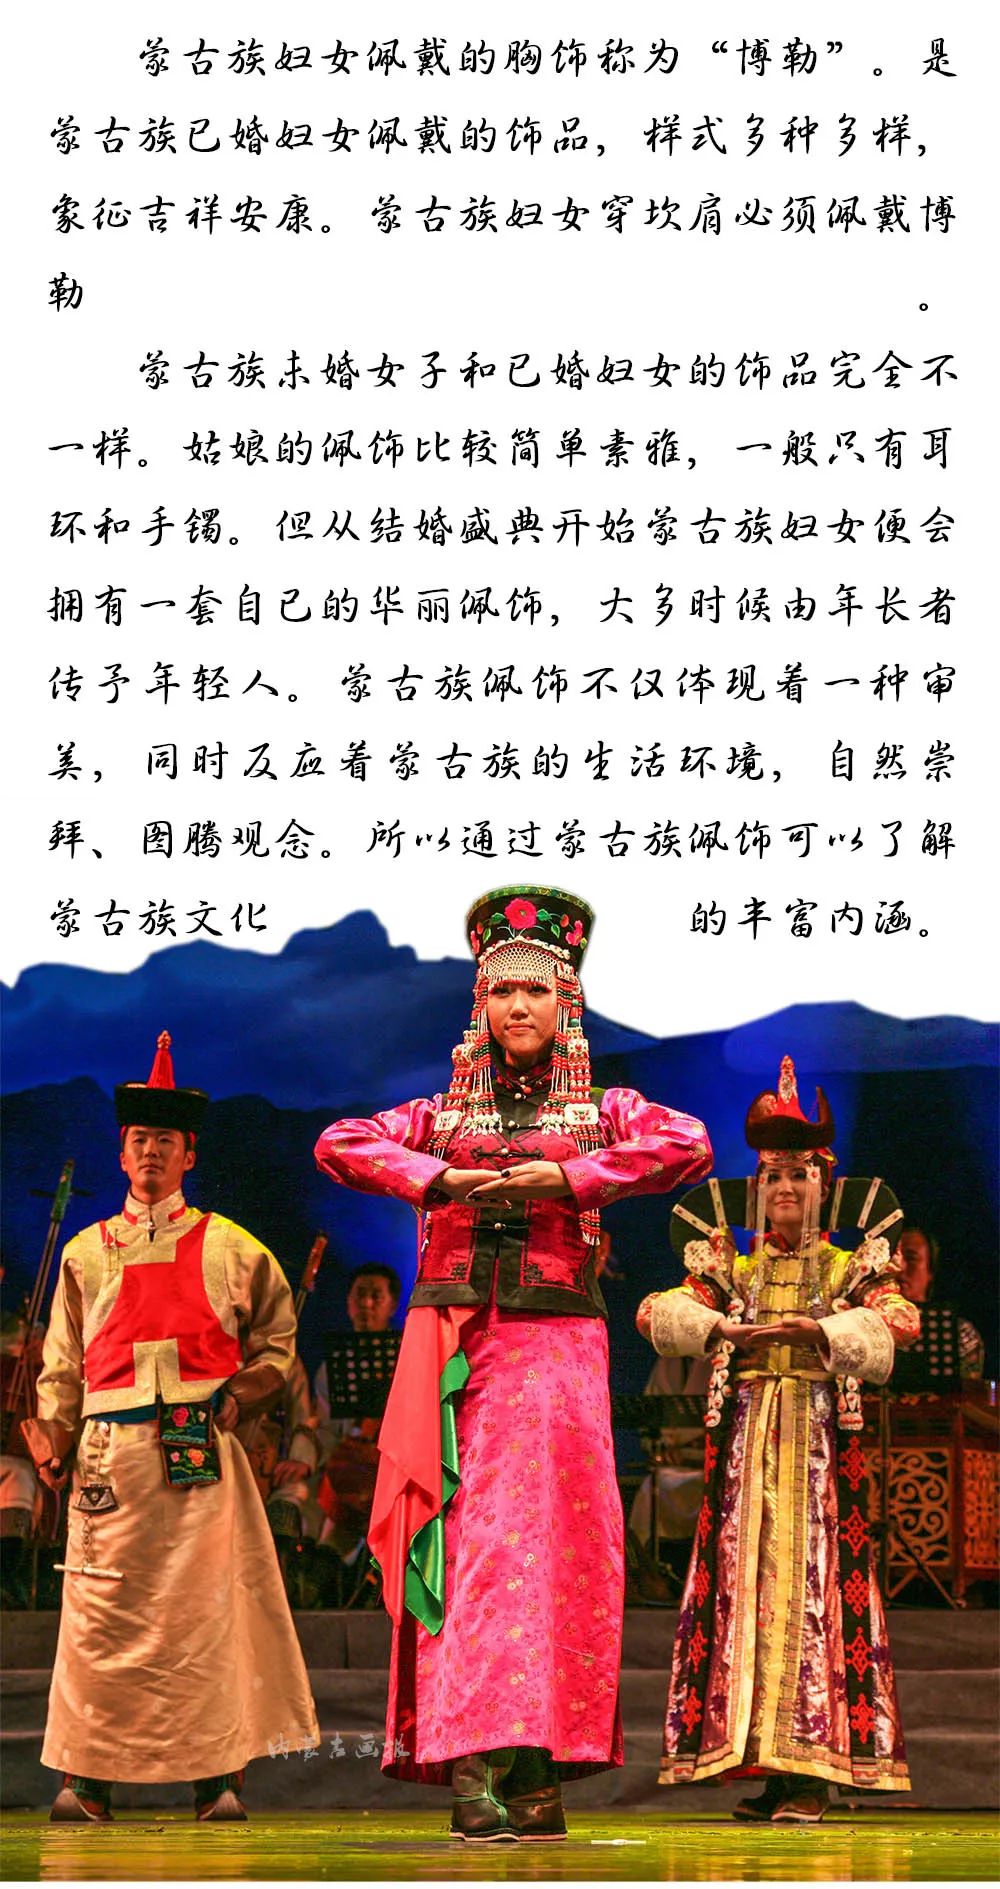 装点世界的蒙古族佩饰 | 女士篇 第11张